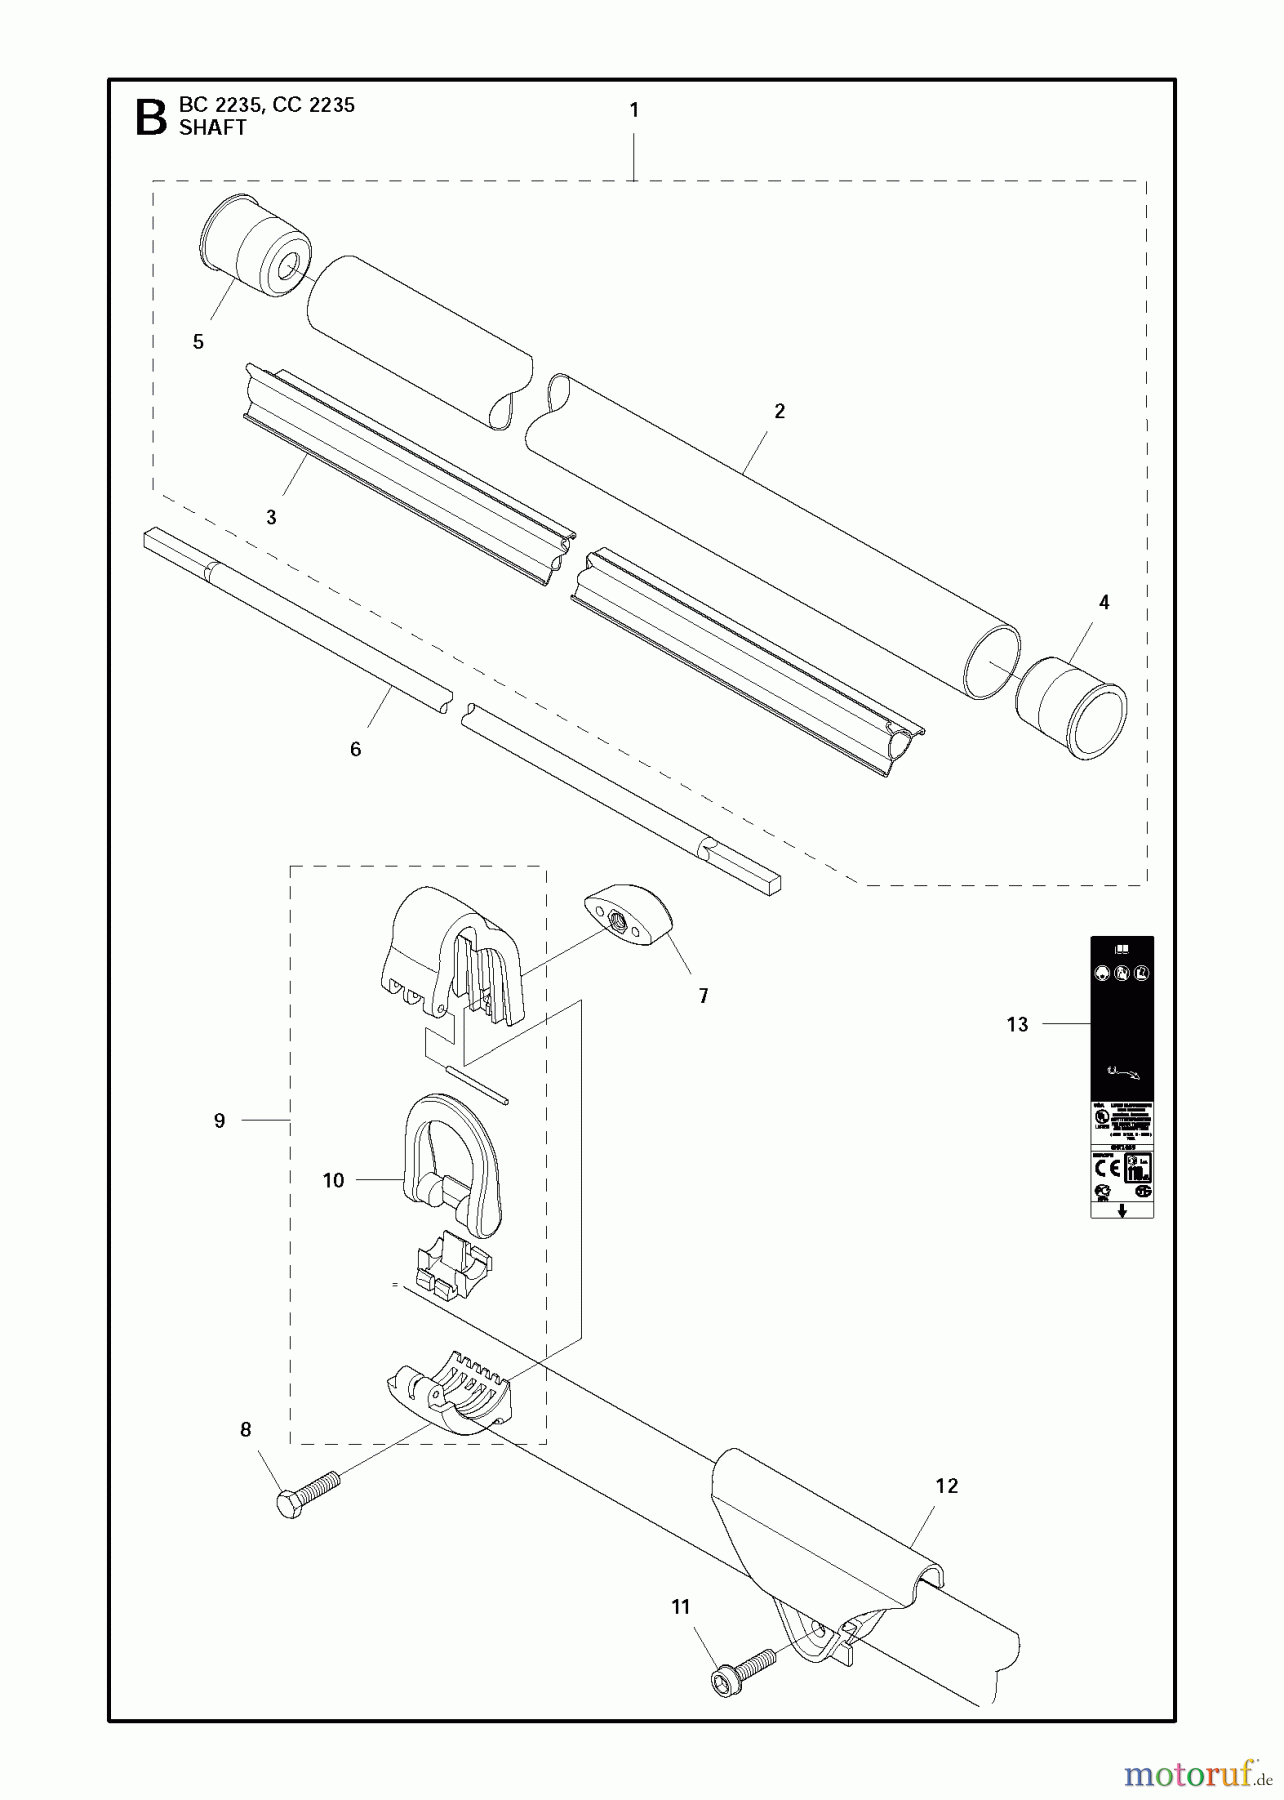  Jonsered Motorsensen, Trimmer CC2235 - Jonsered String/Brush Trimmer (2011-02) SHAFT